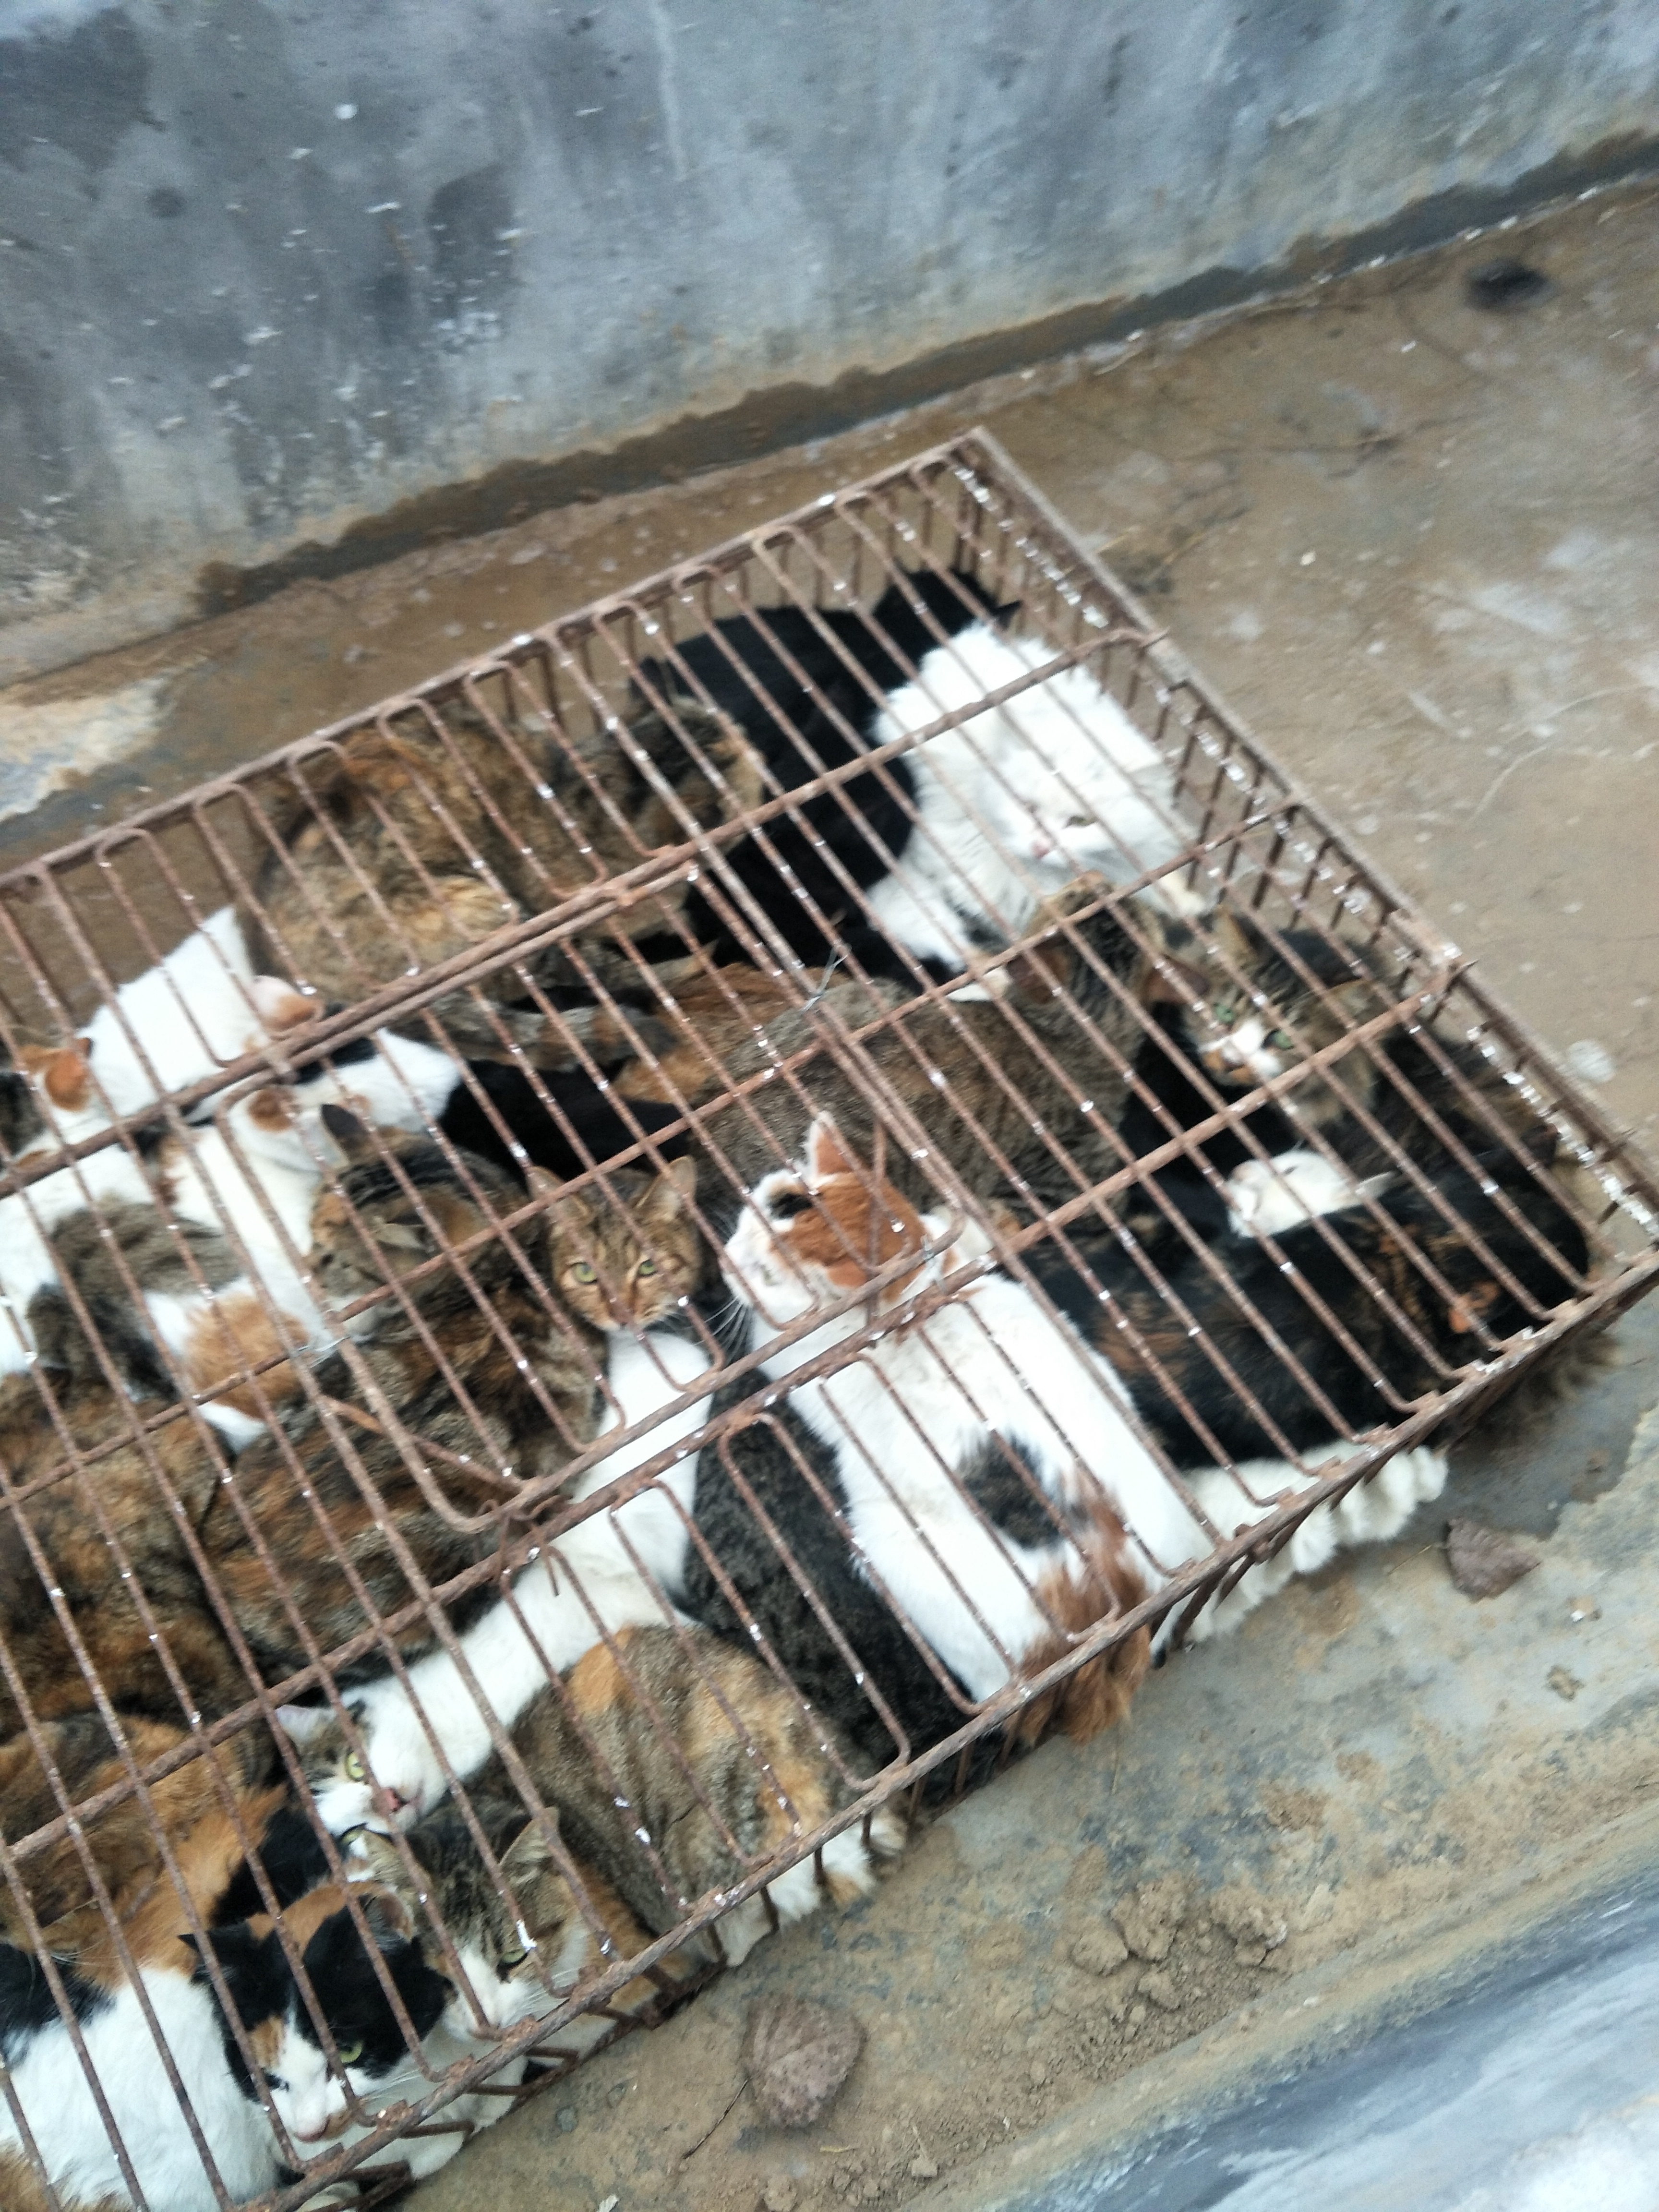 供应肉猫—山东肆合肉猫养殖场-大型肉猫养殖基地 肉猫养殖、狸花猫养殖、全国发货 肉猫价格、肉猫养殖前景图片